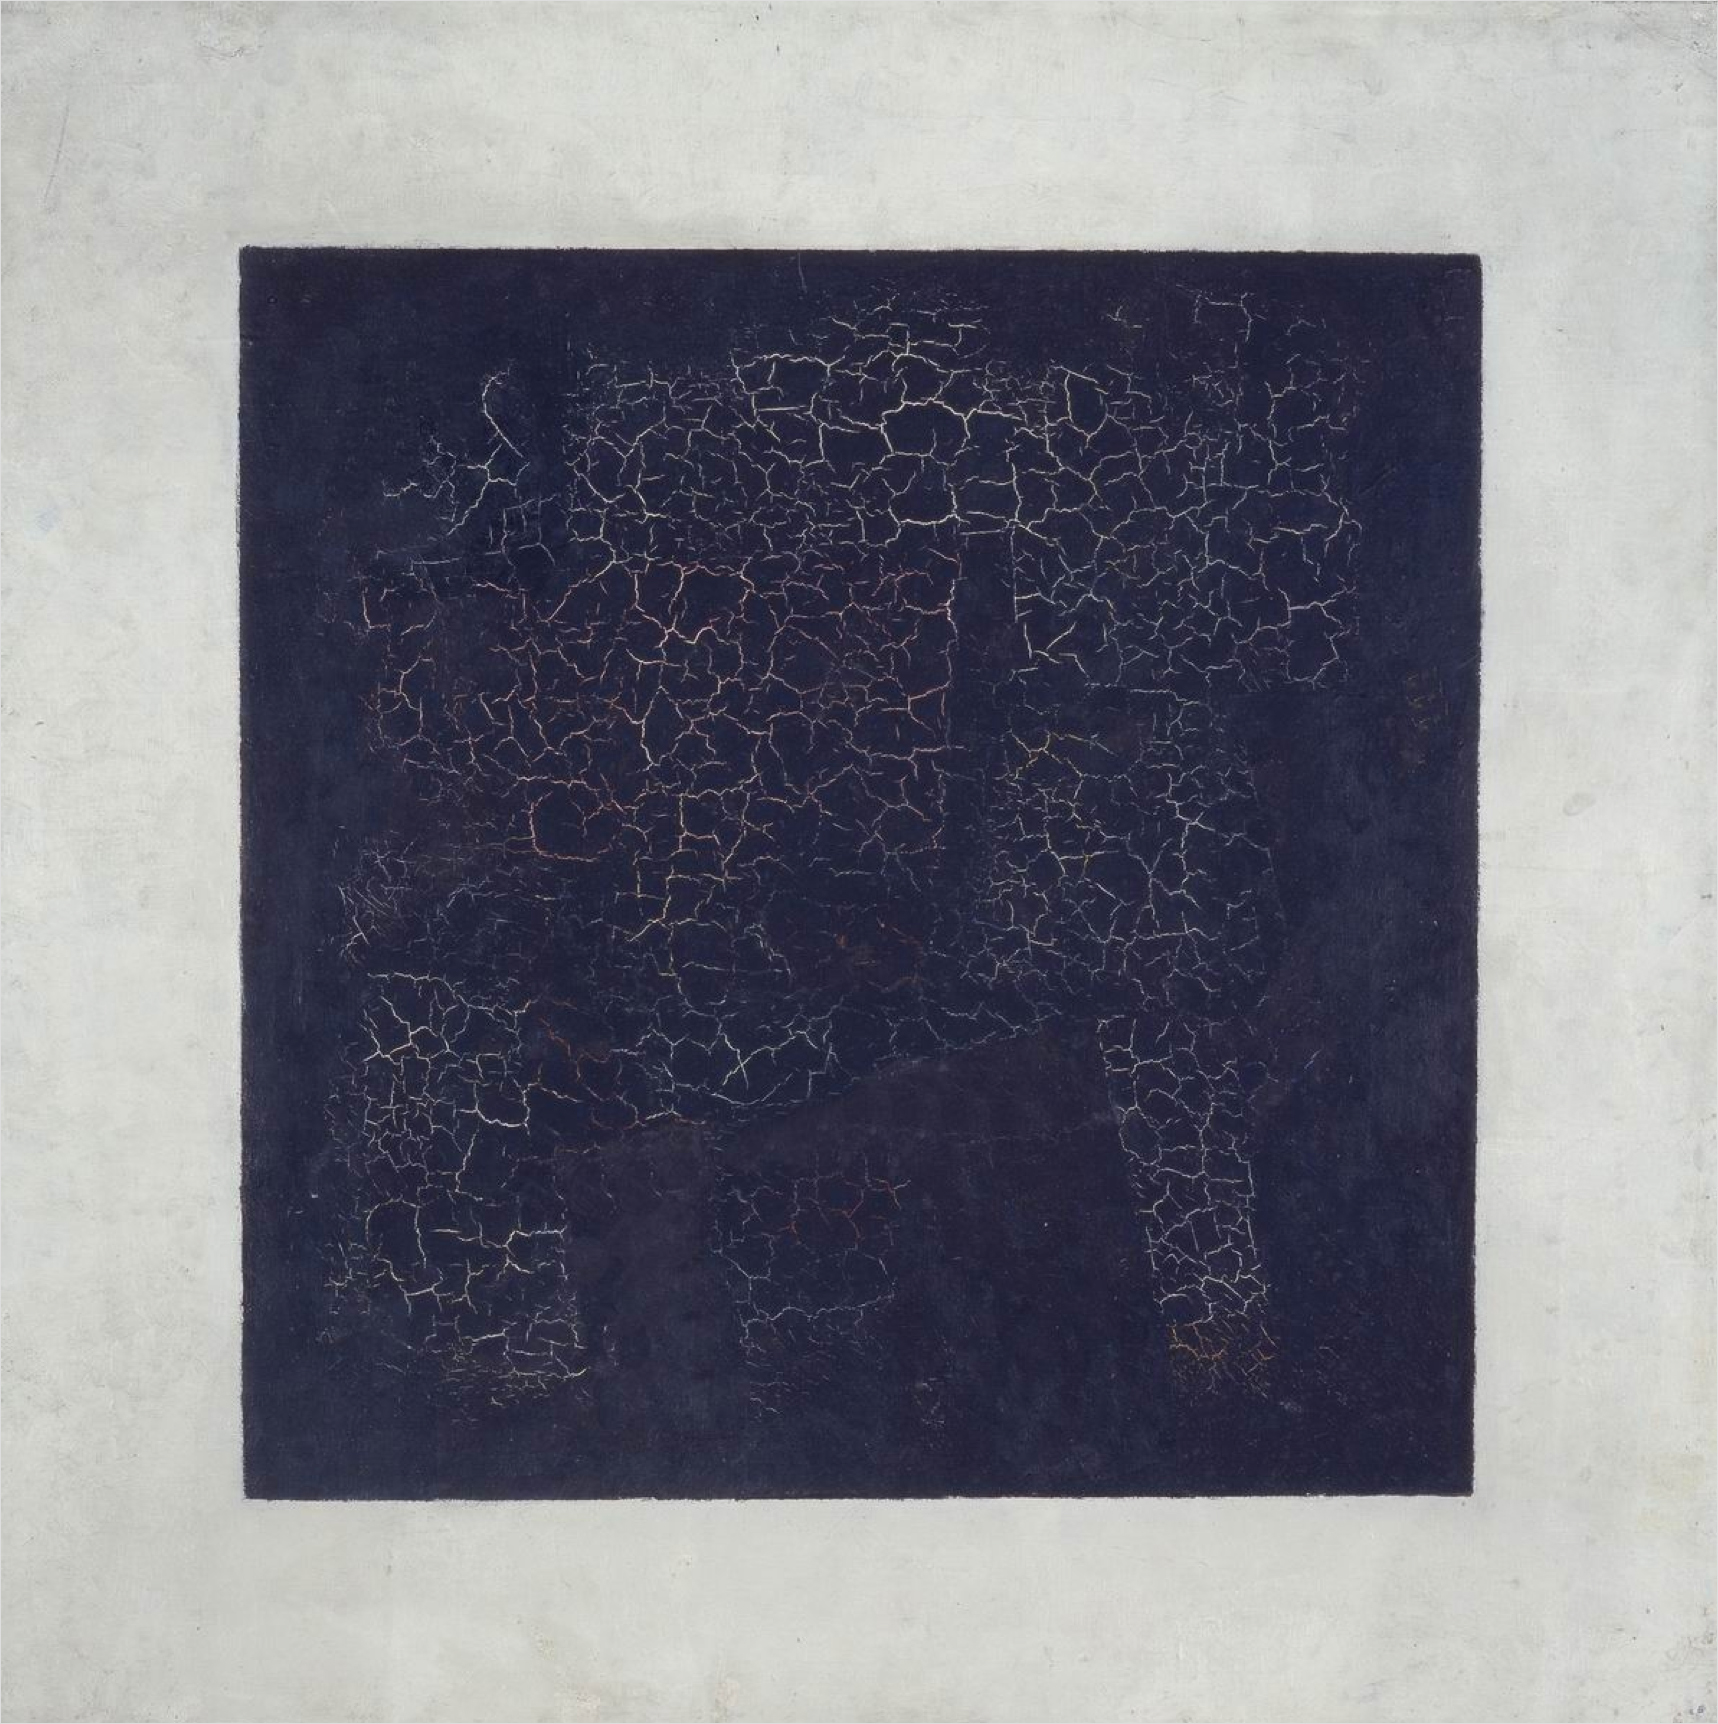 Cuadrado negro by Kazimir Malévich - 1915 - 79,5 x 79,5 cm Galería Estatal Tretiakov